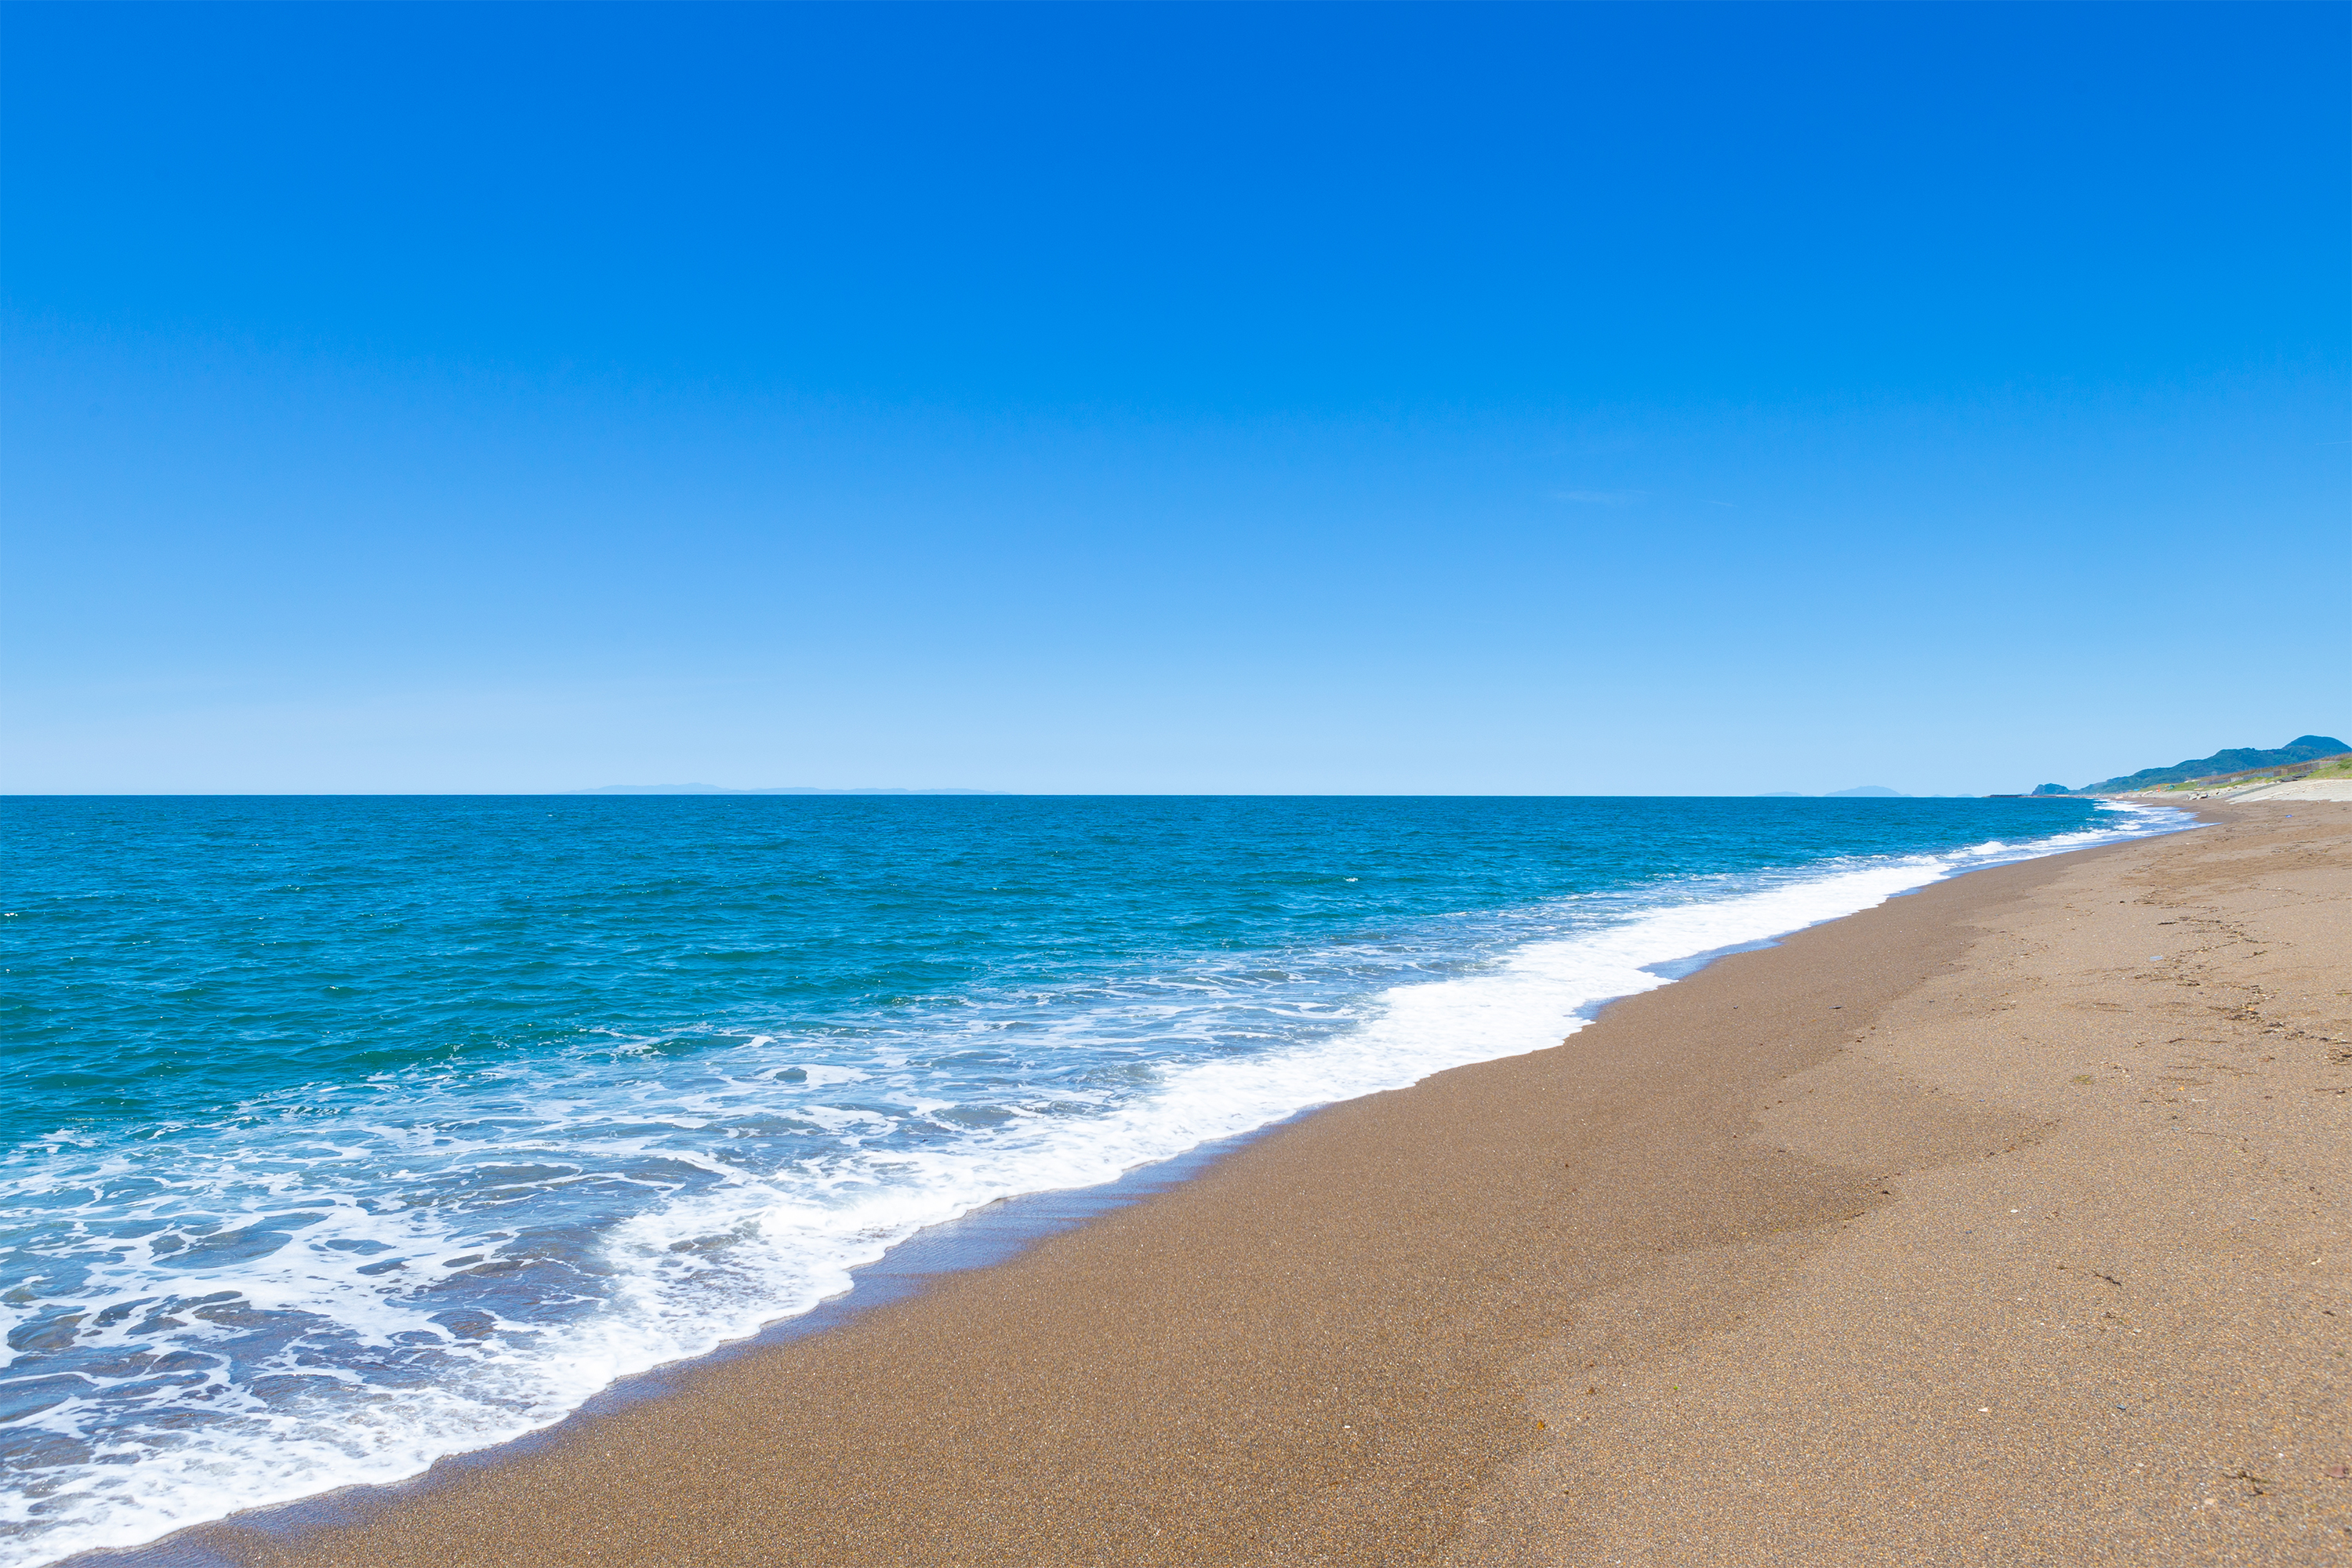 海 日本海 と砂浜03 無料の高画質フリー写真素材 イメージズラボ